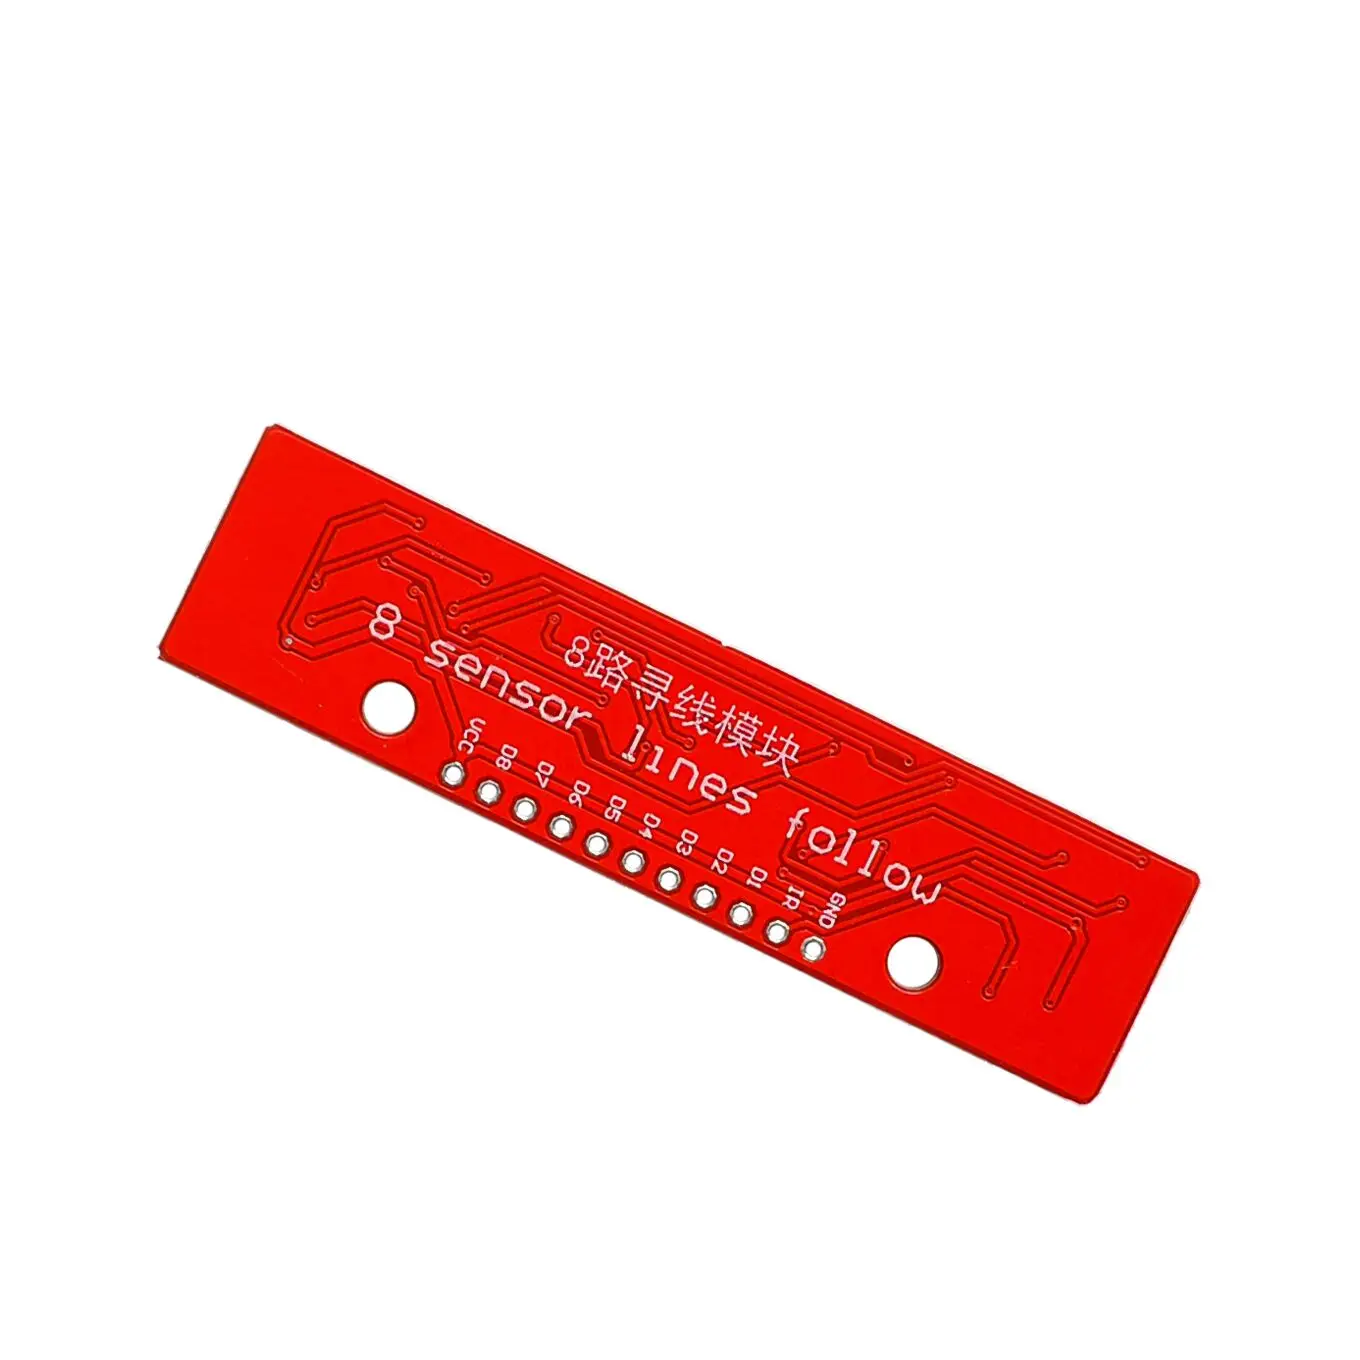 10PCS/LOT Sledenje Modul je Infrardeči Senzor za Zaznavanje Modul DIY Za Arduino 8-Kanalni Ir Detektor Lov Modul 8 bit Senzor